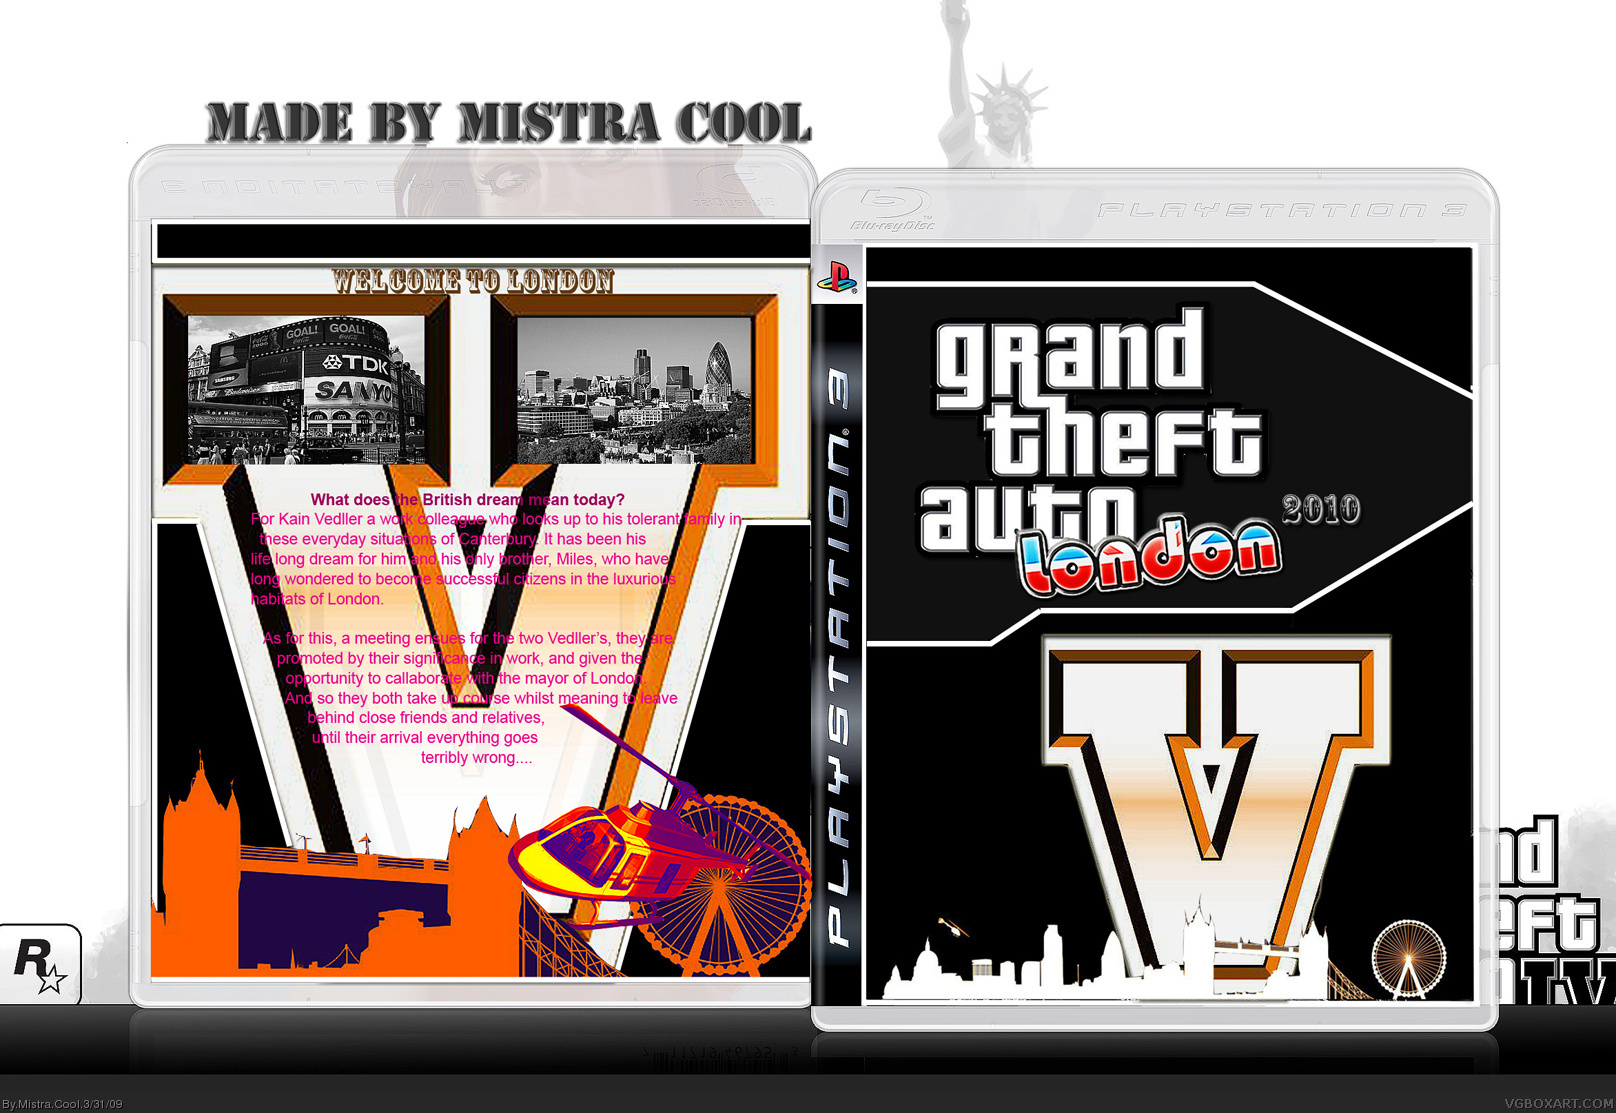 Grand Theft Auto V ; London 2010 box cover